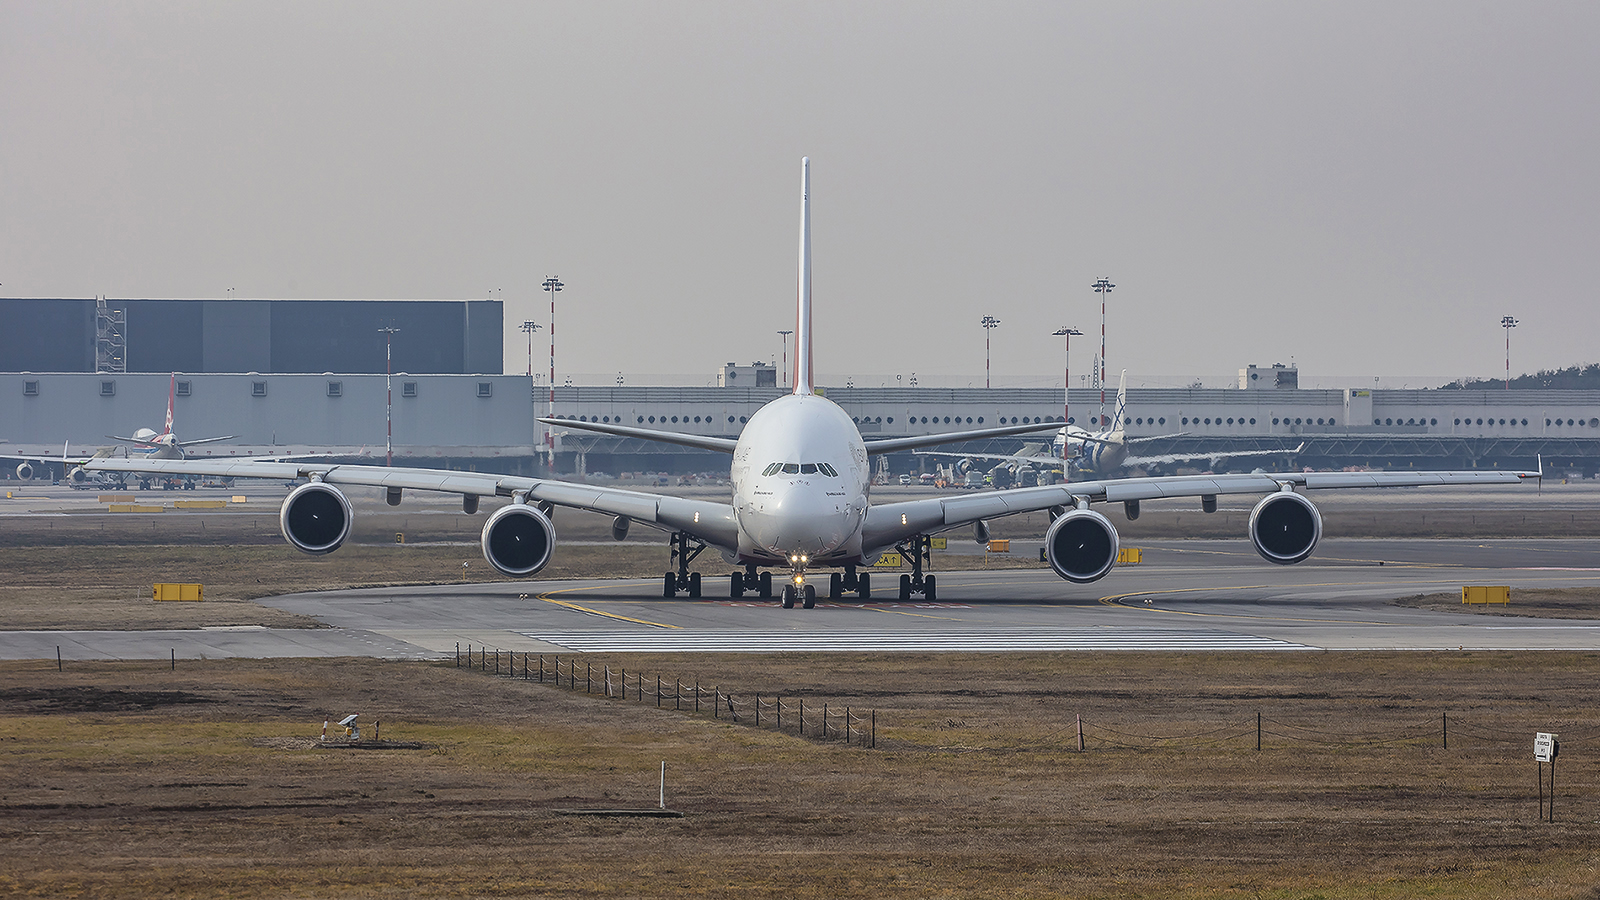 Wenn man über 100 A380 besitzt muss man damit auch irgendwo hinfliegen, auch wenn es keinen Sinn macht.